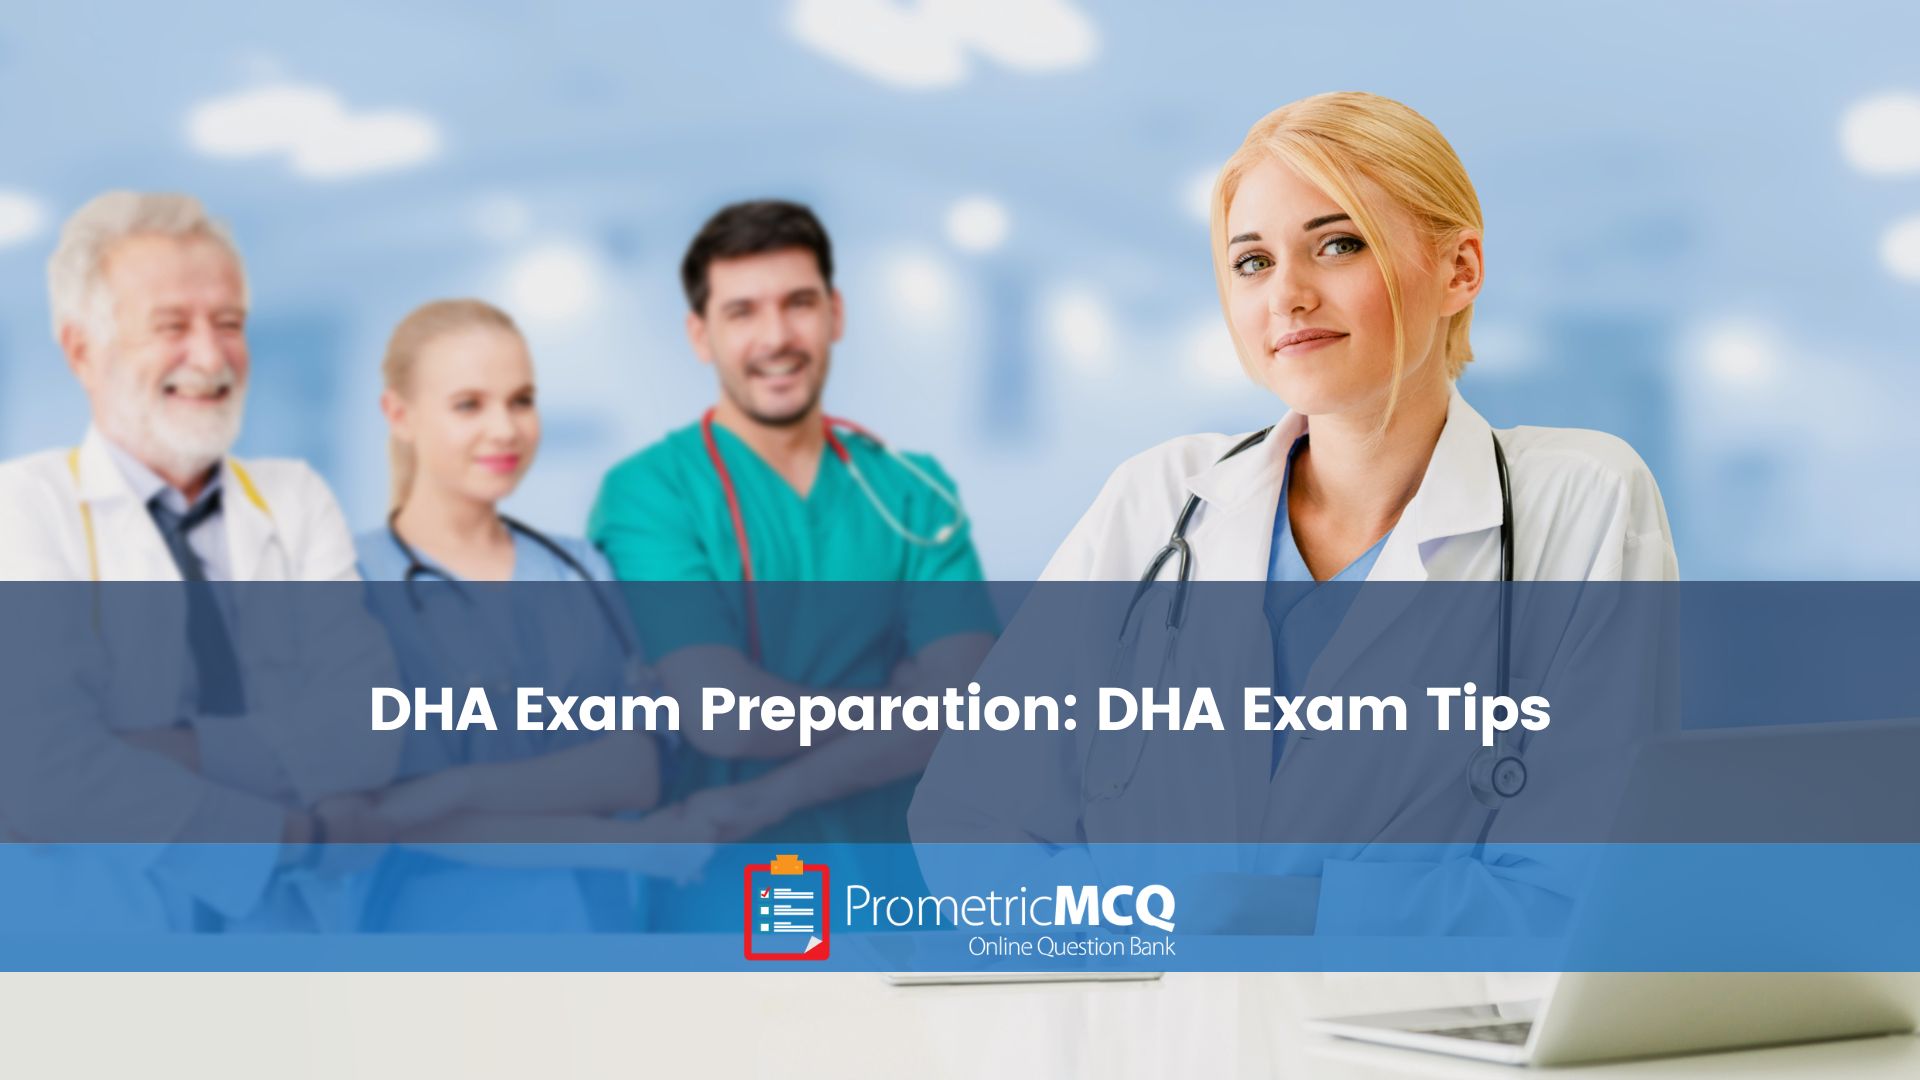 DHA Exam Preparation DHA Exam Tips